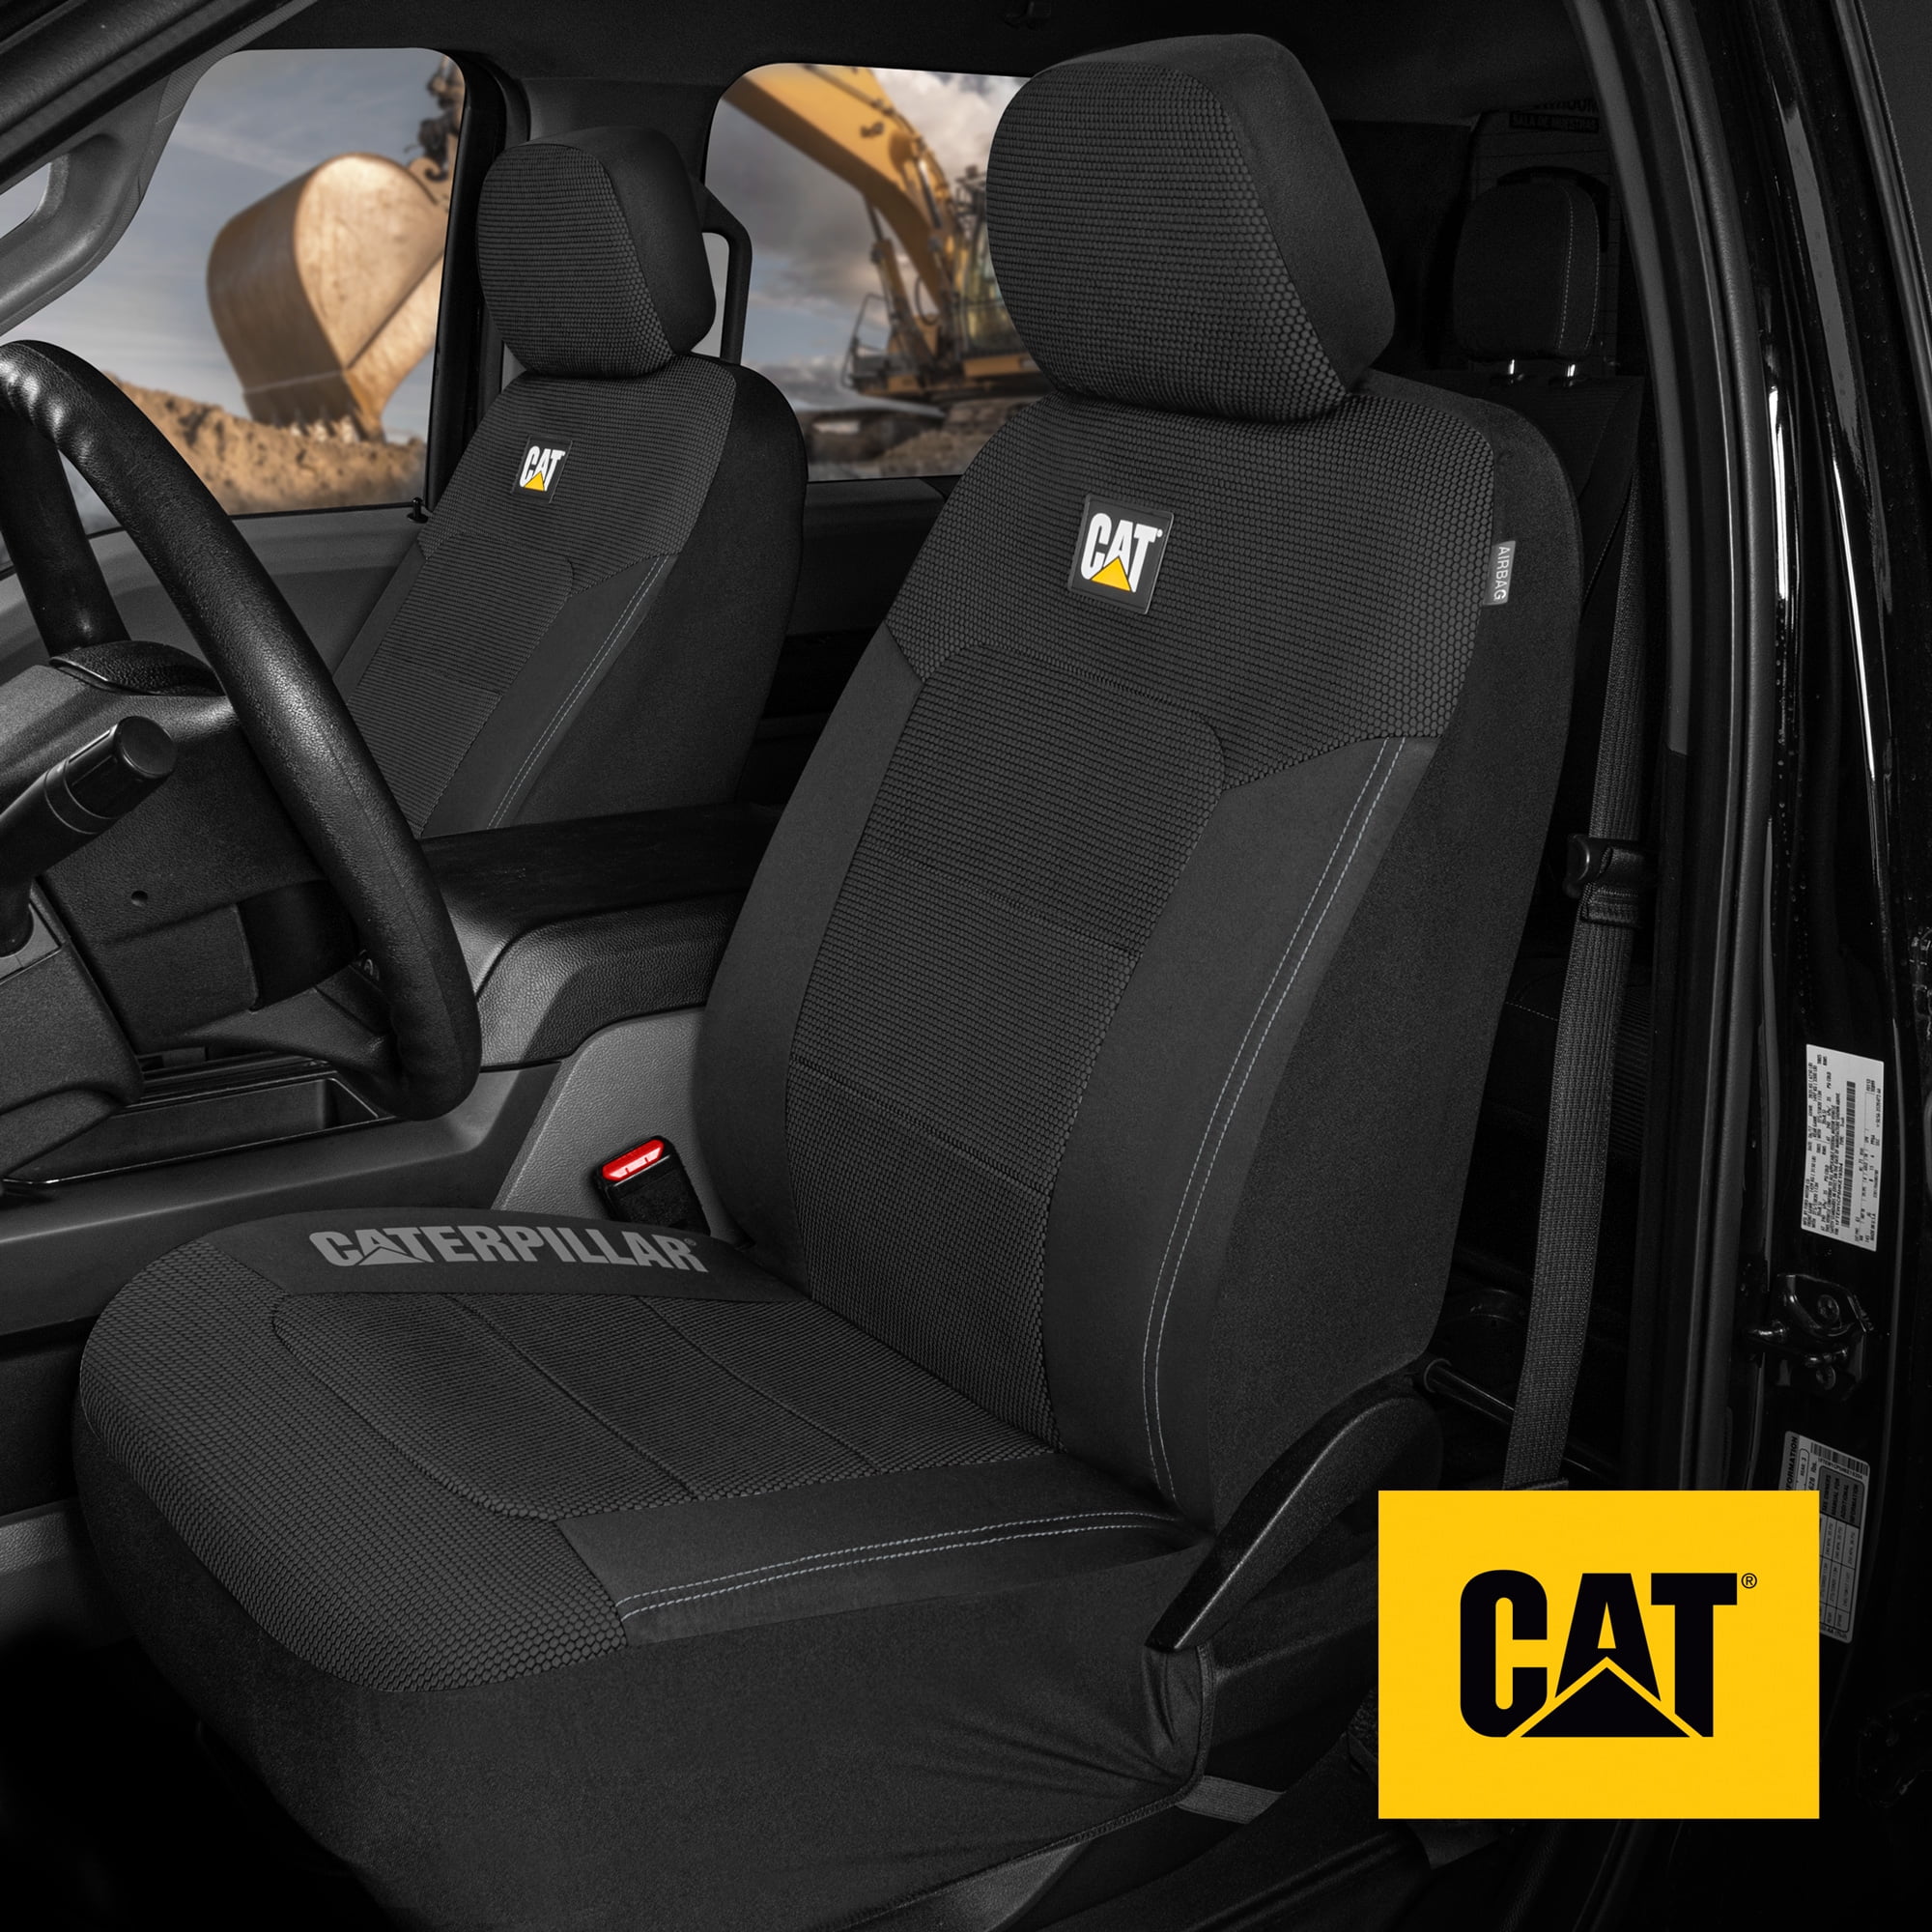 DALLAS COWBOYS Car Seat Cover Personalized Nonslip Auto Seat Protector 2Pcs new 